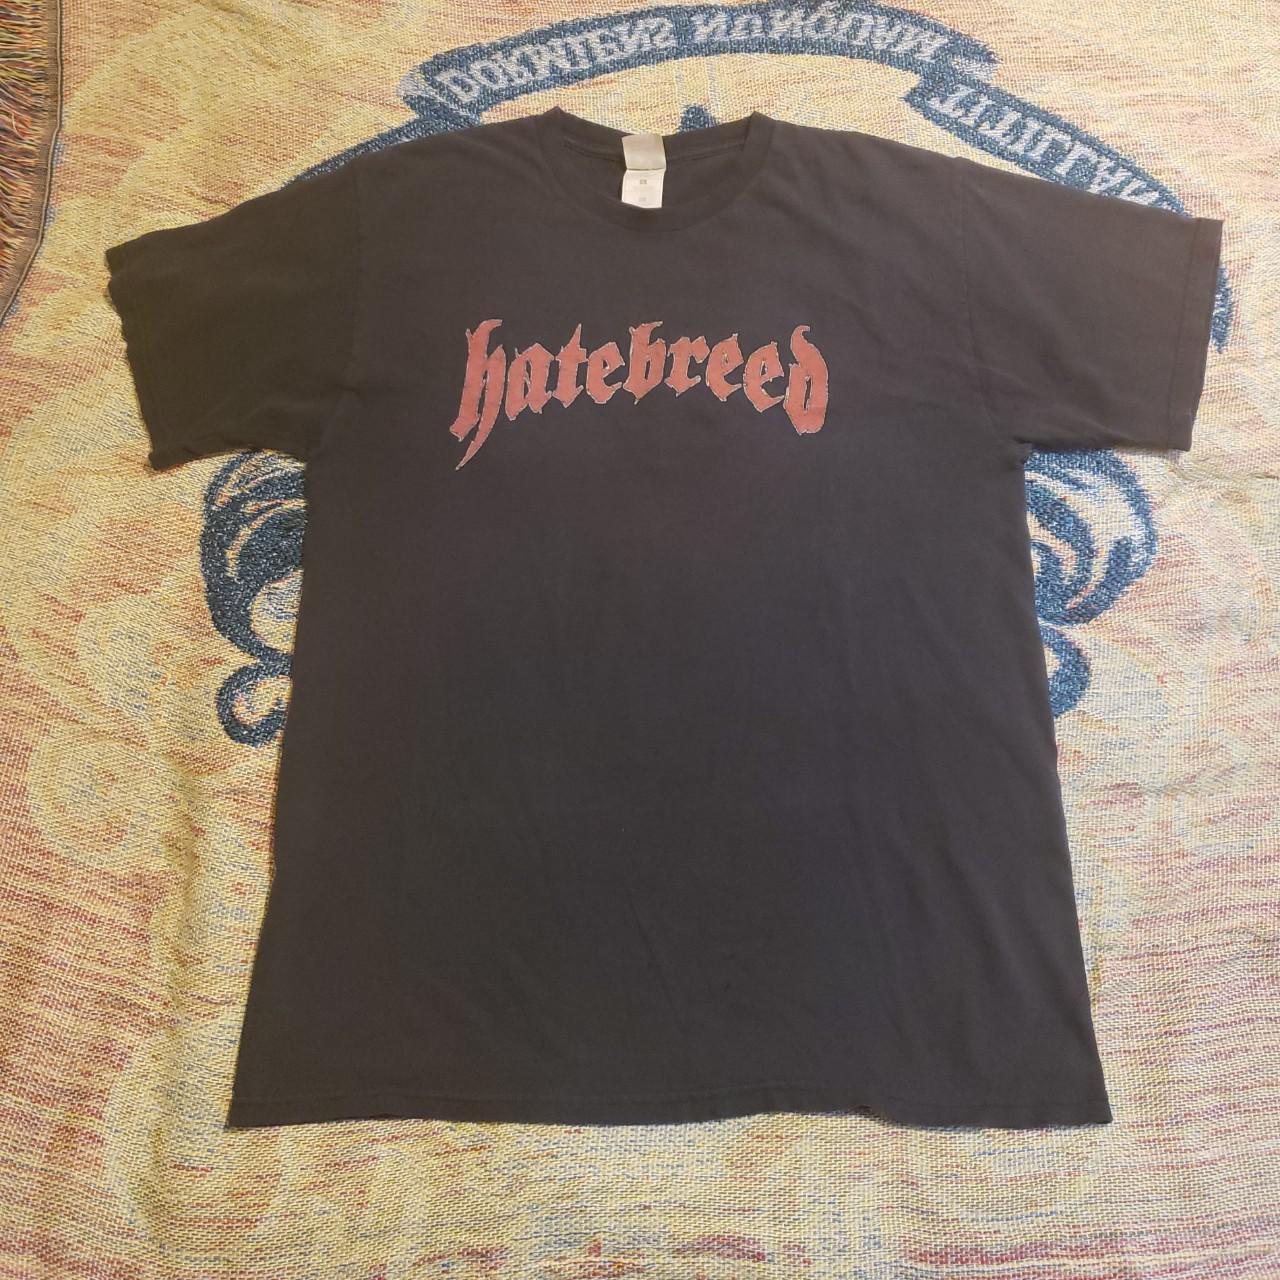 Vintage Hatebreed Under the Knife Tour L Shirt NYHC... - Depop